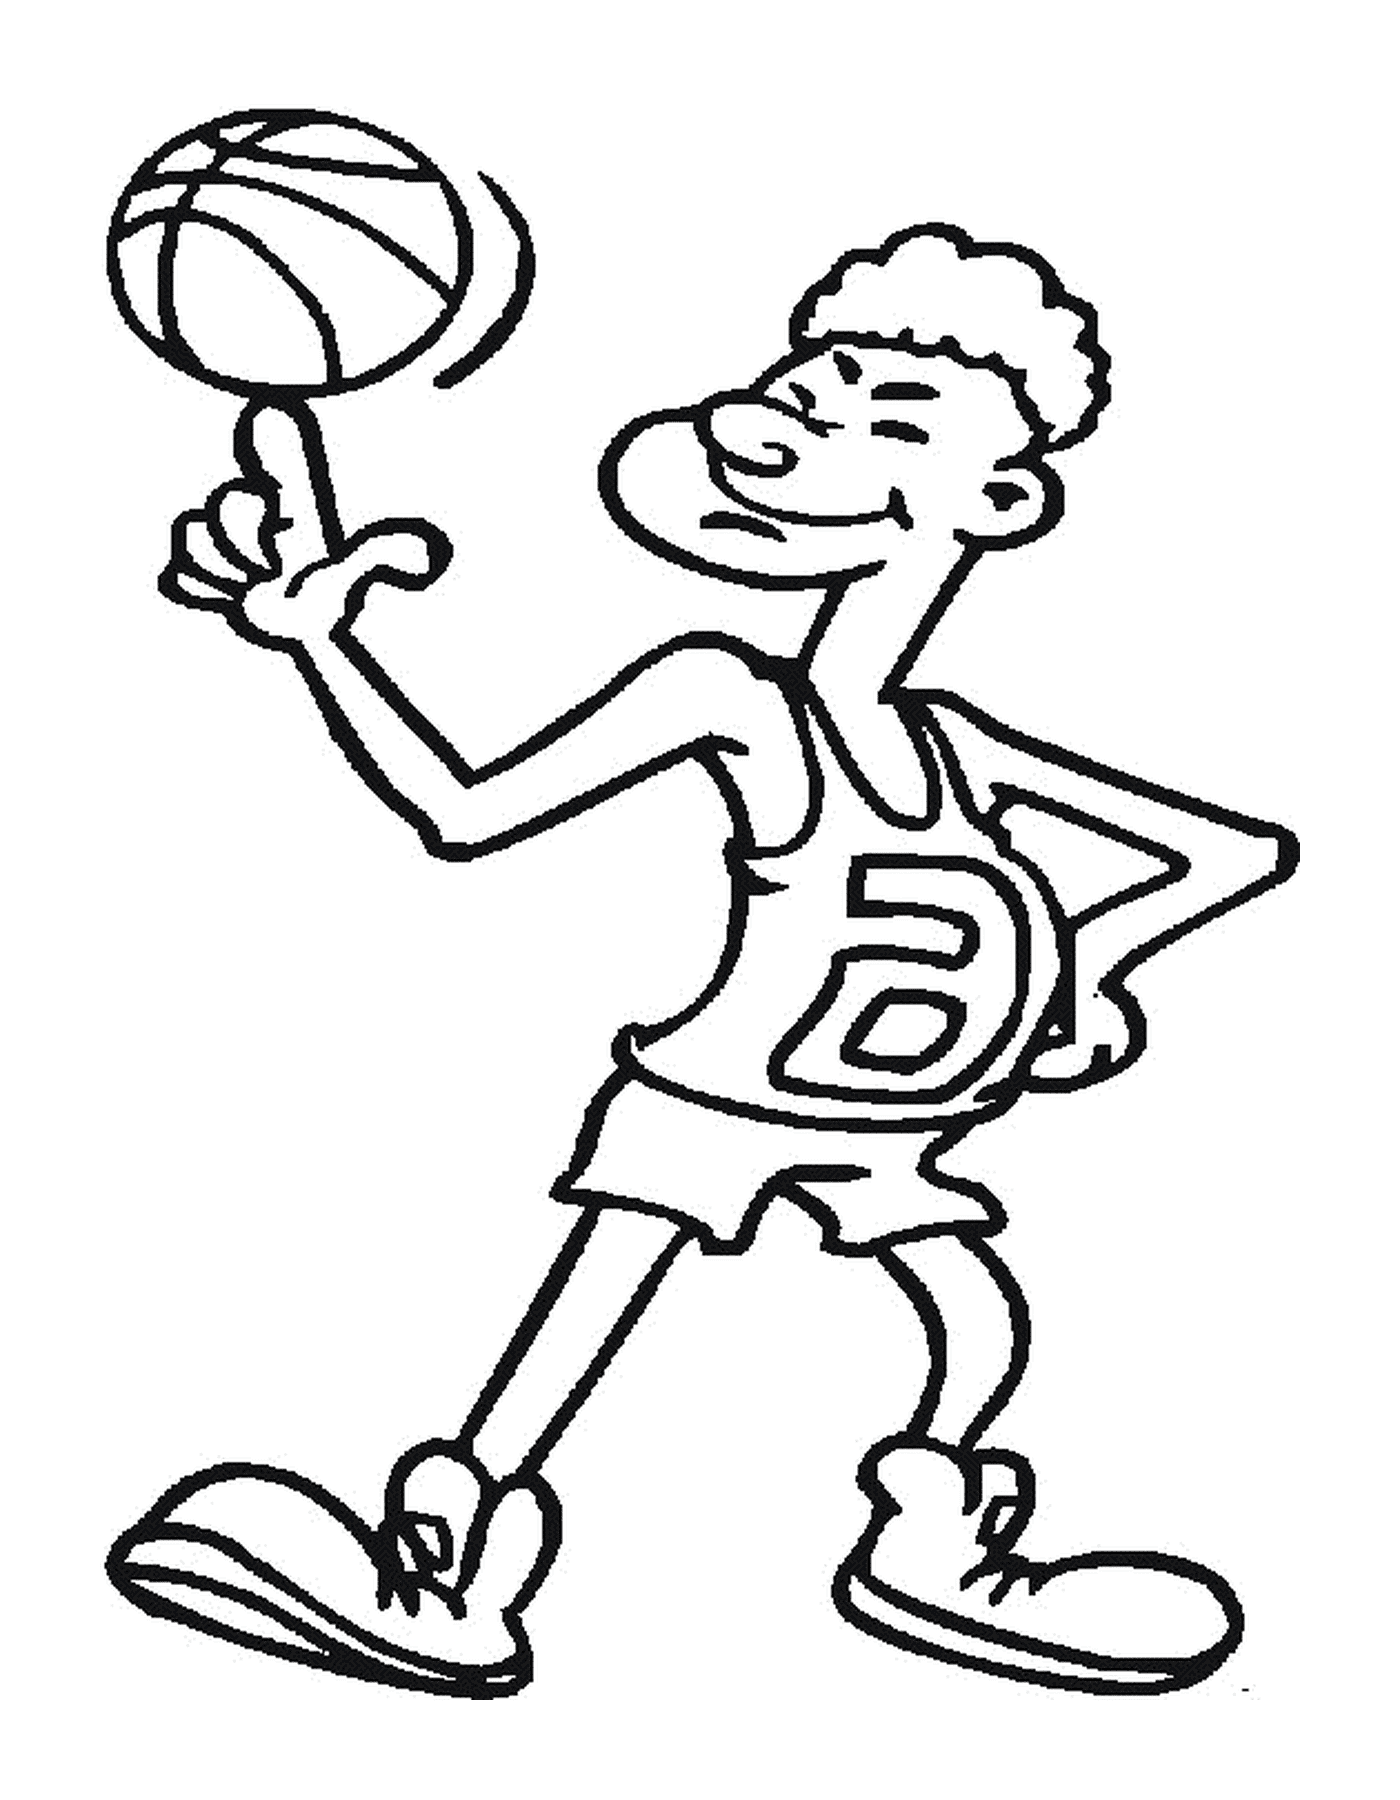   Joueur qui jongle avec un ballon de basket 